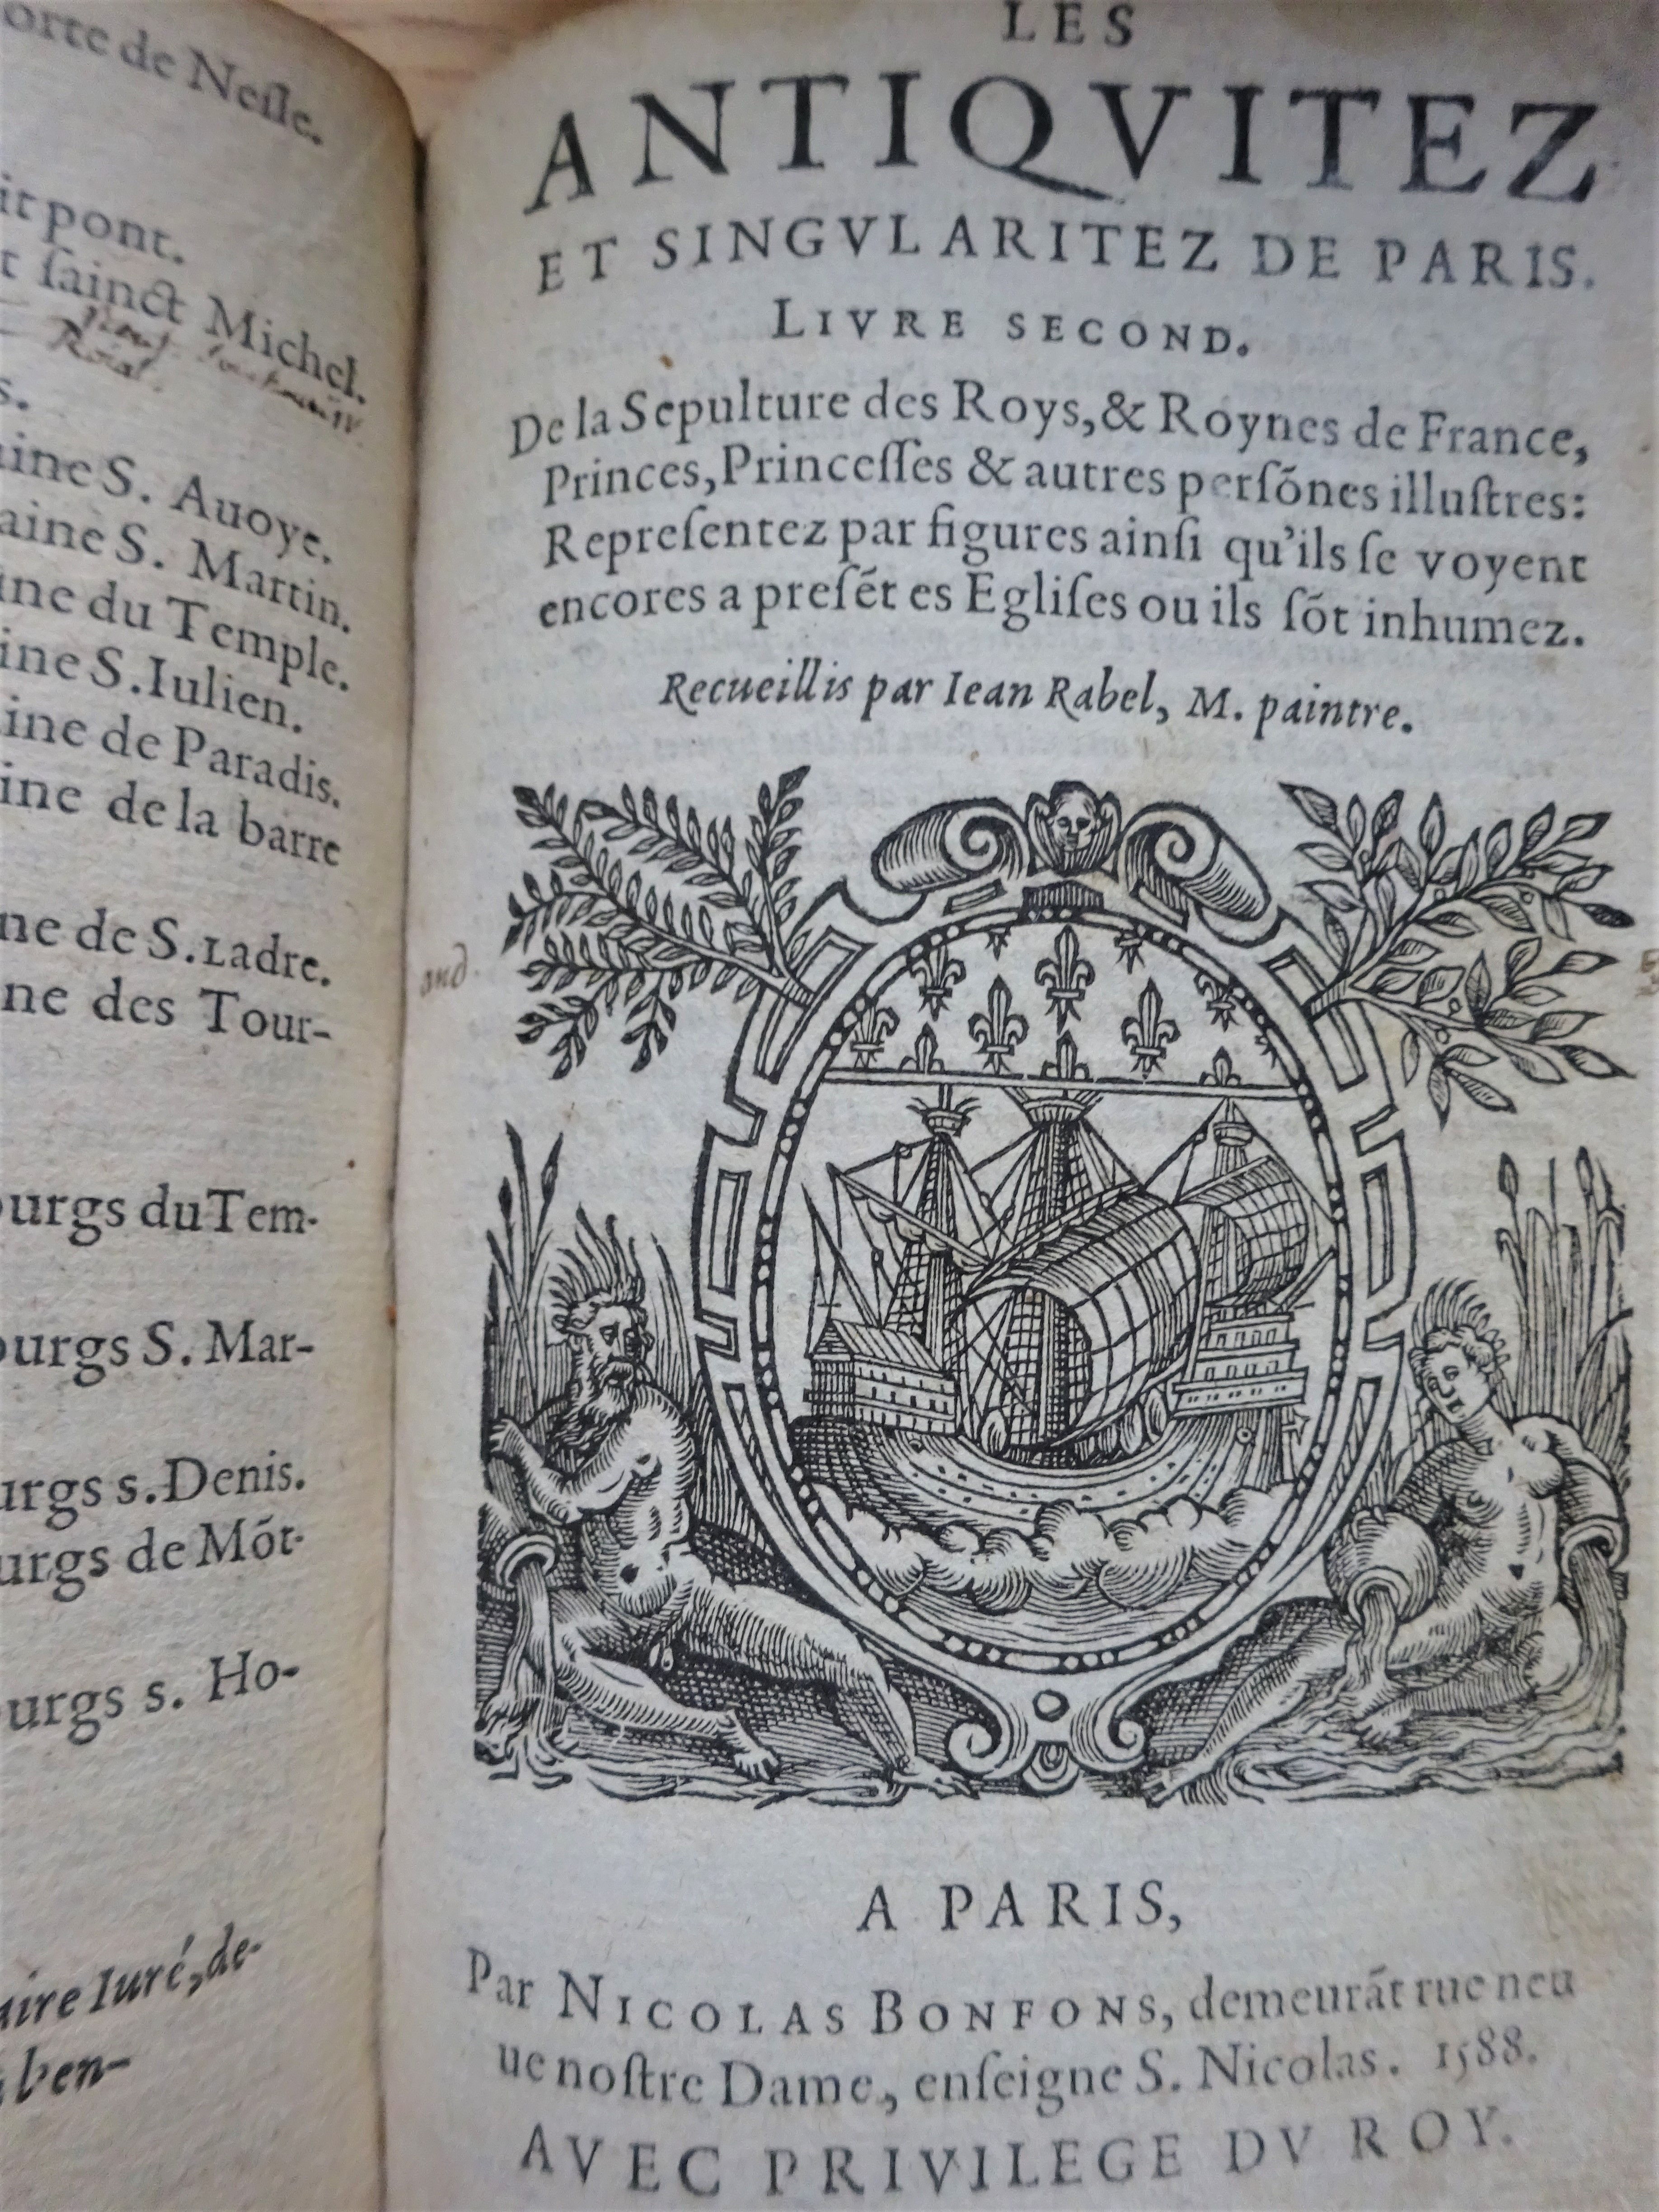 Les Antiquitez croniques et singularitez de Paris. 1586-1588